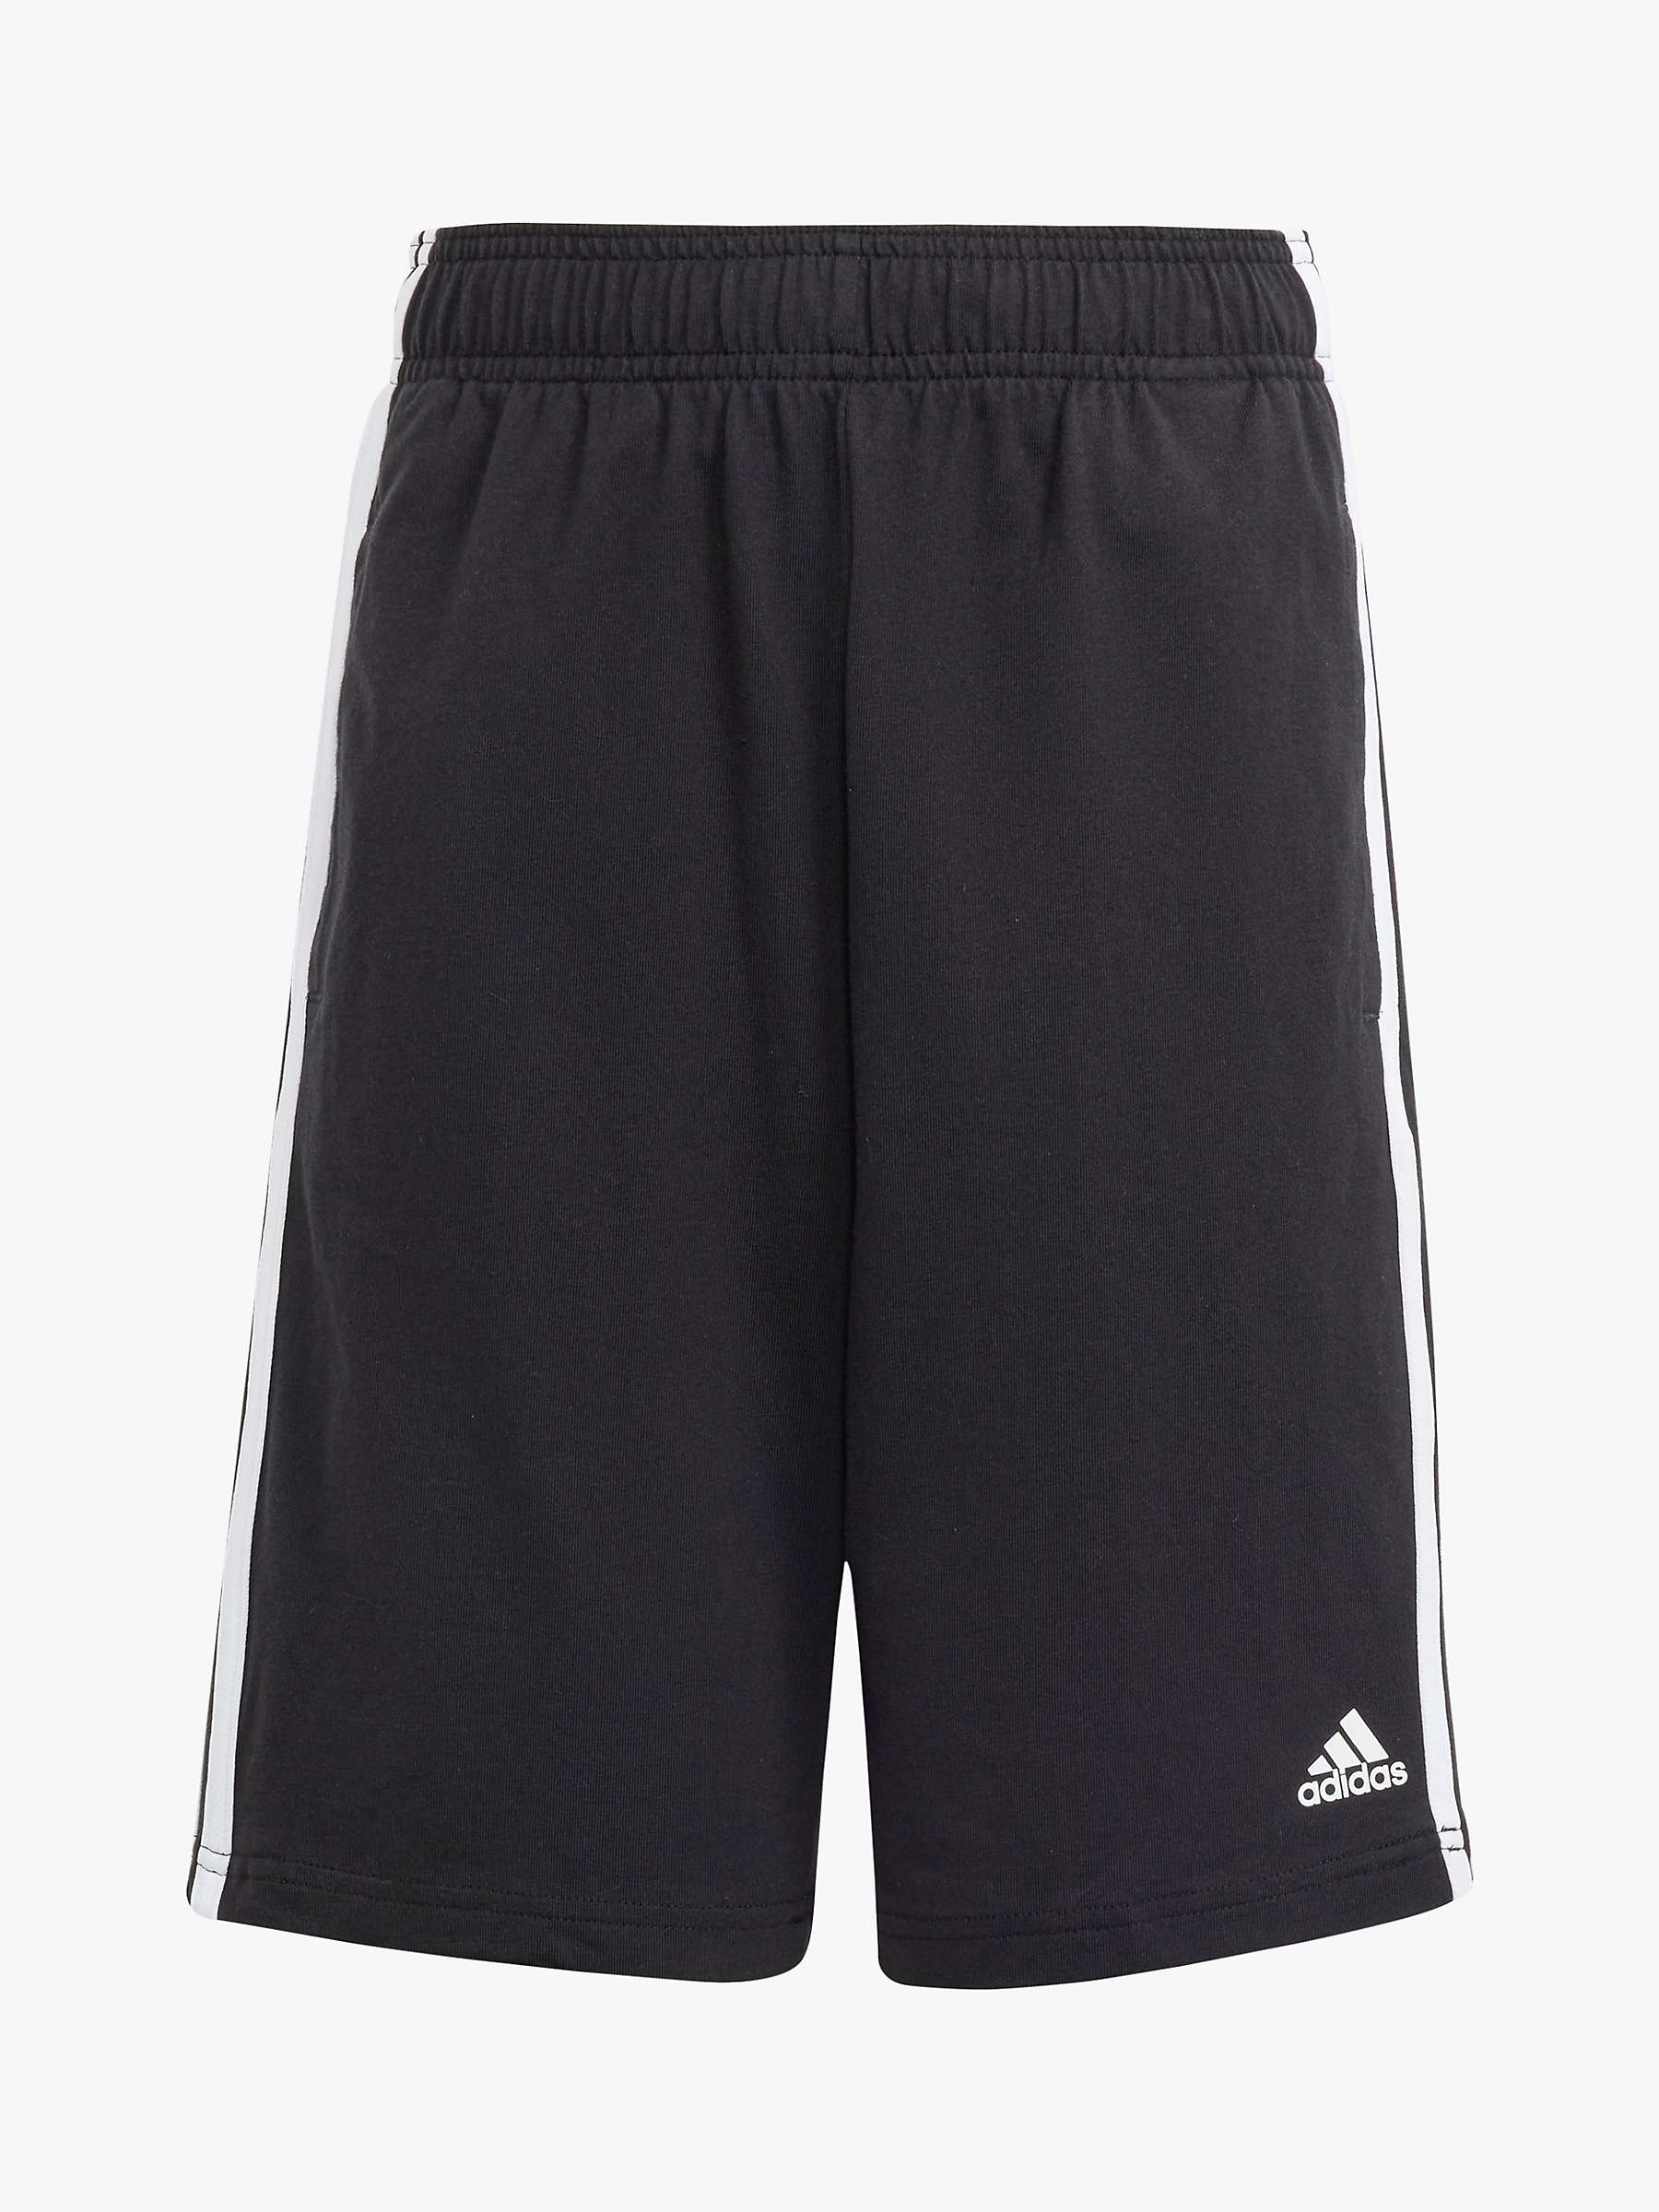 Buy adidas Kids' Stripe Cotton Shorts, Black Online at johnlewis.com